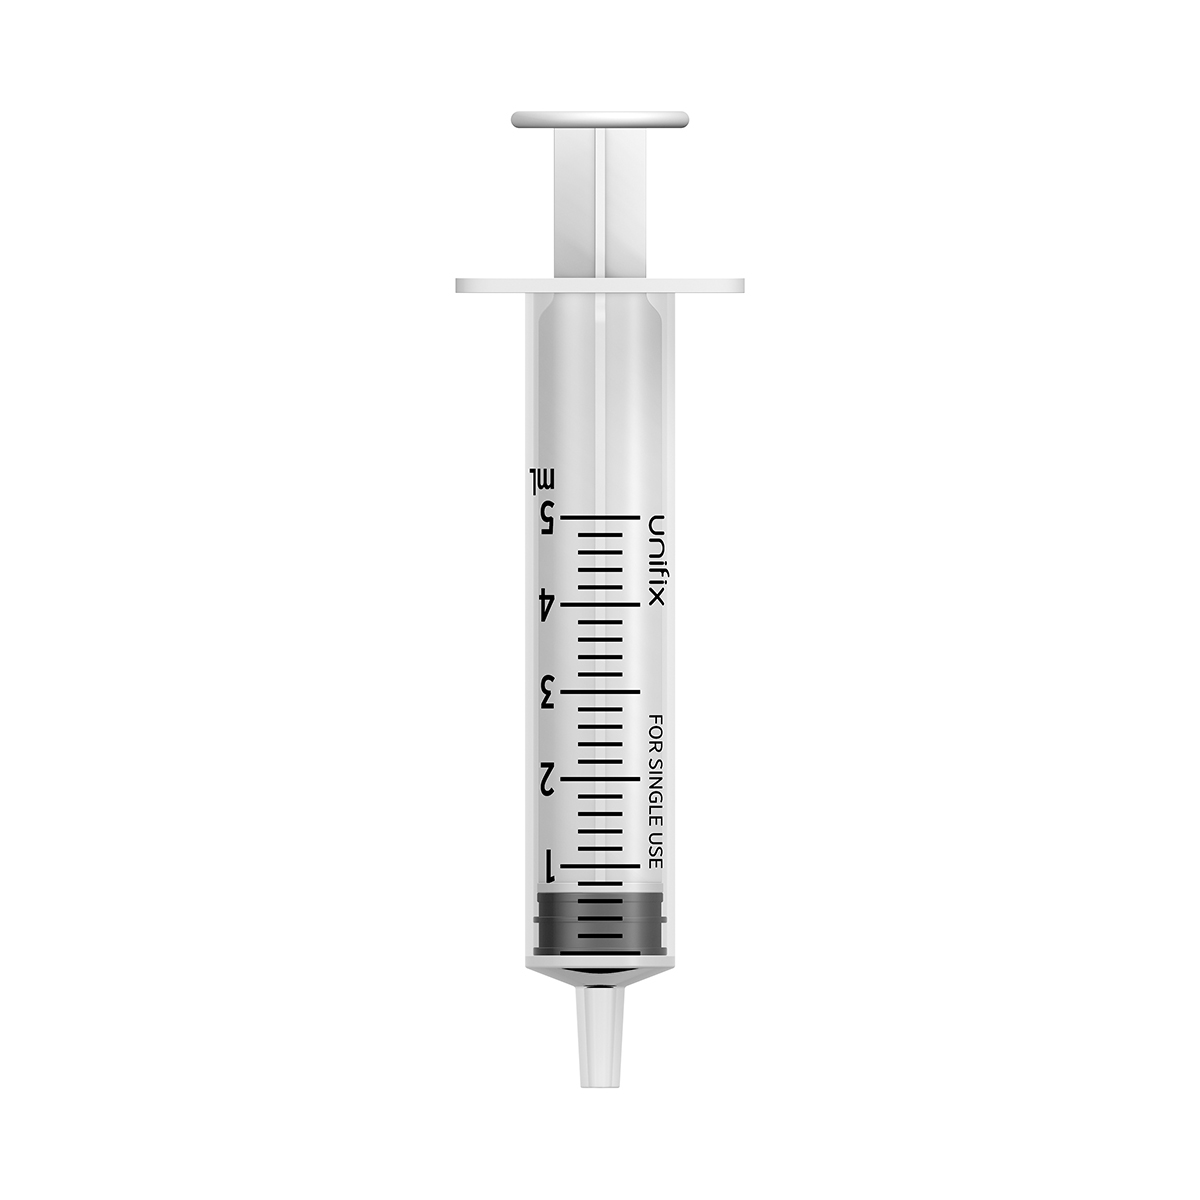 Unifix 5ml luer slip syringe